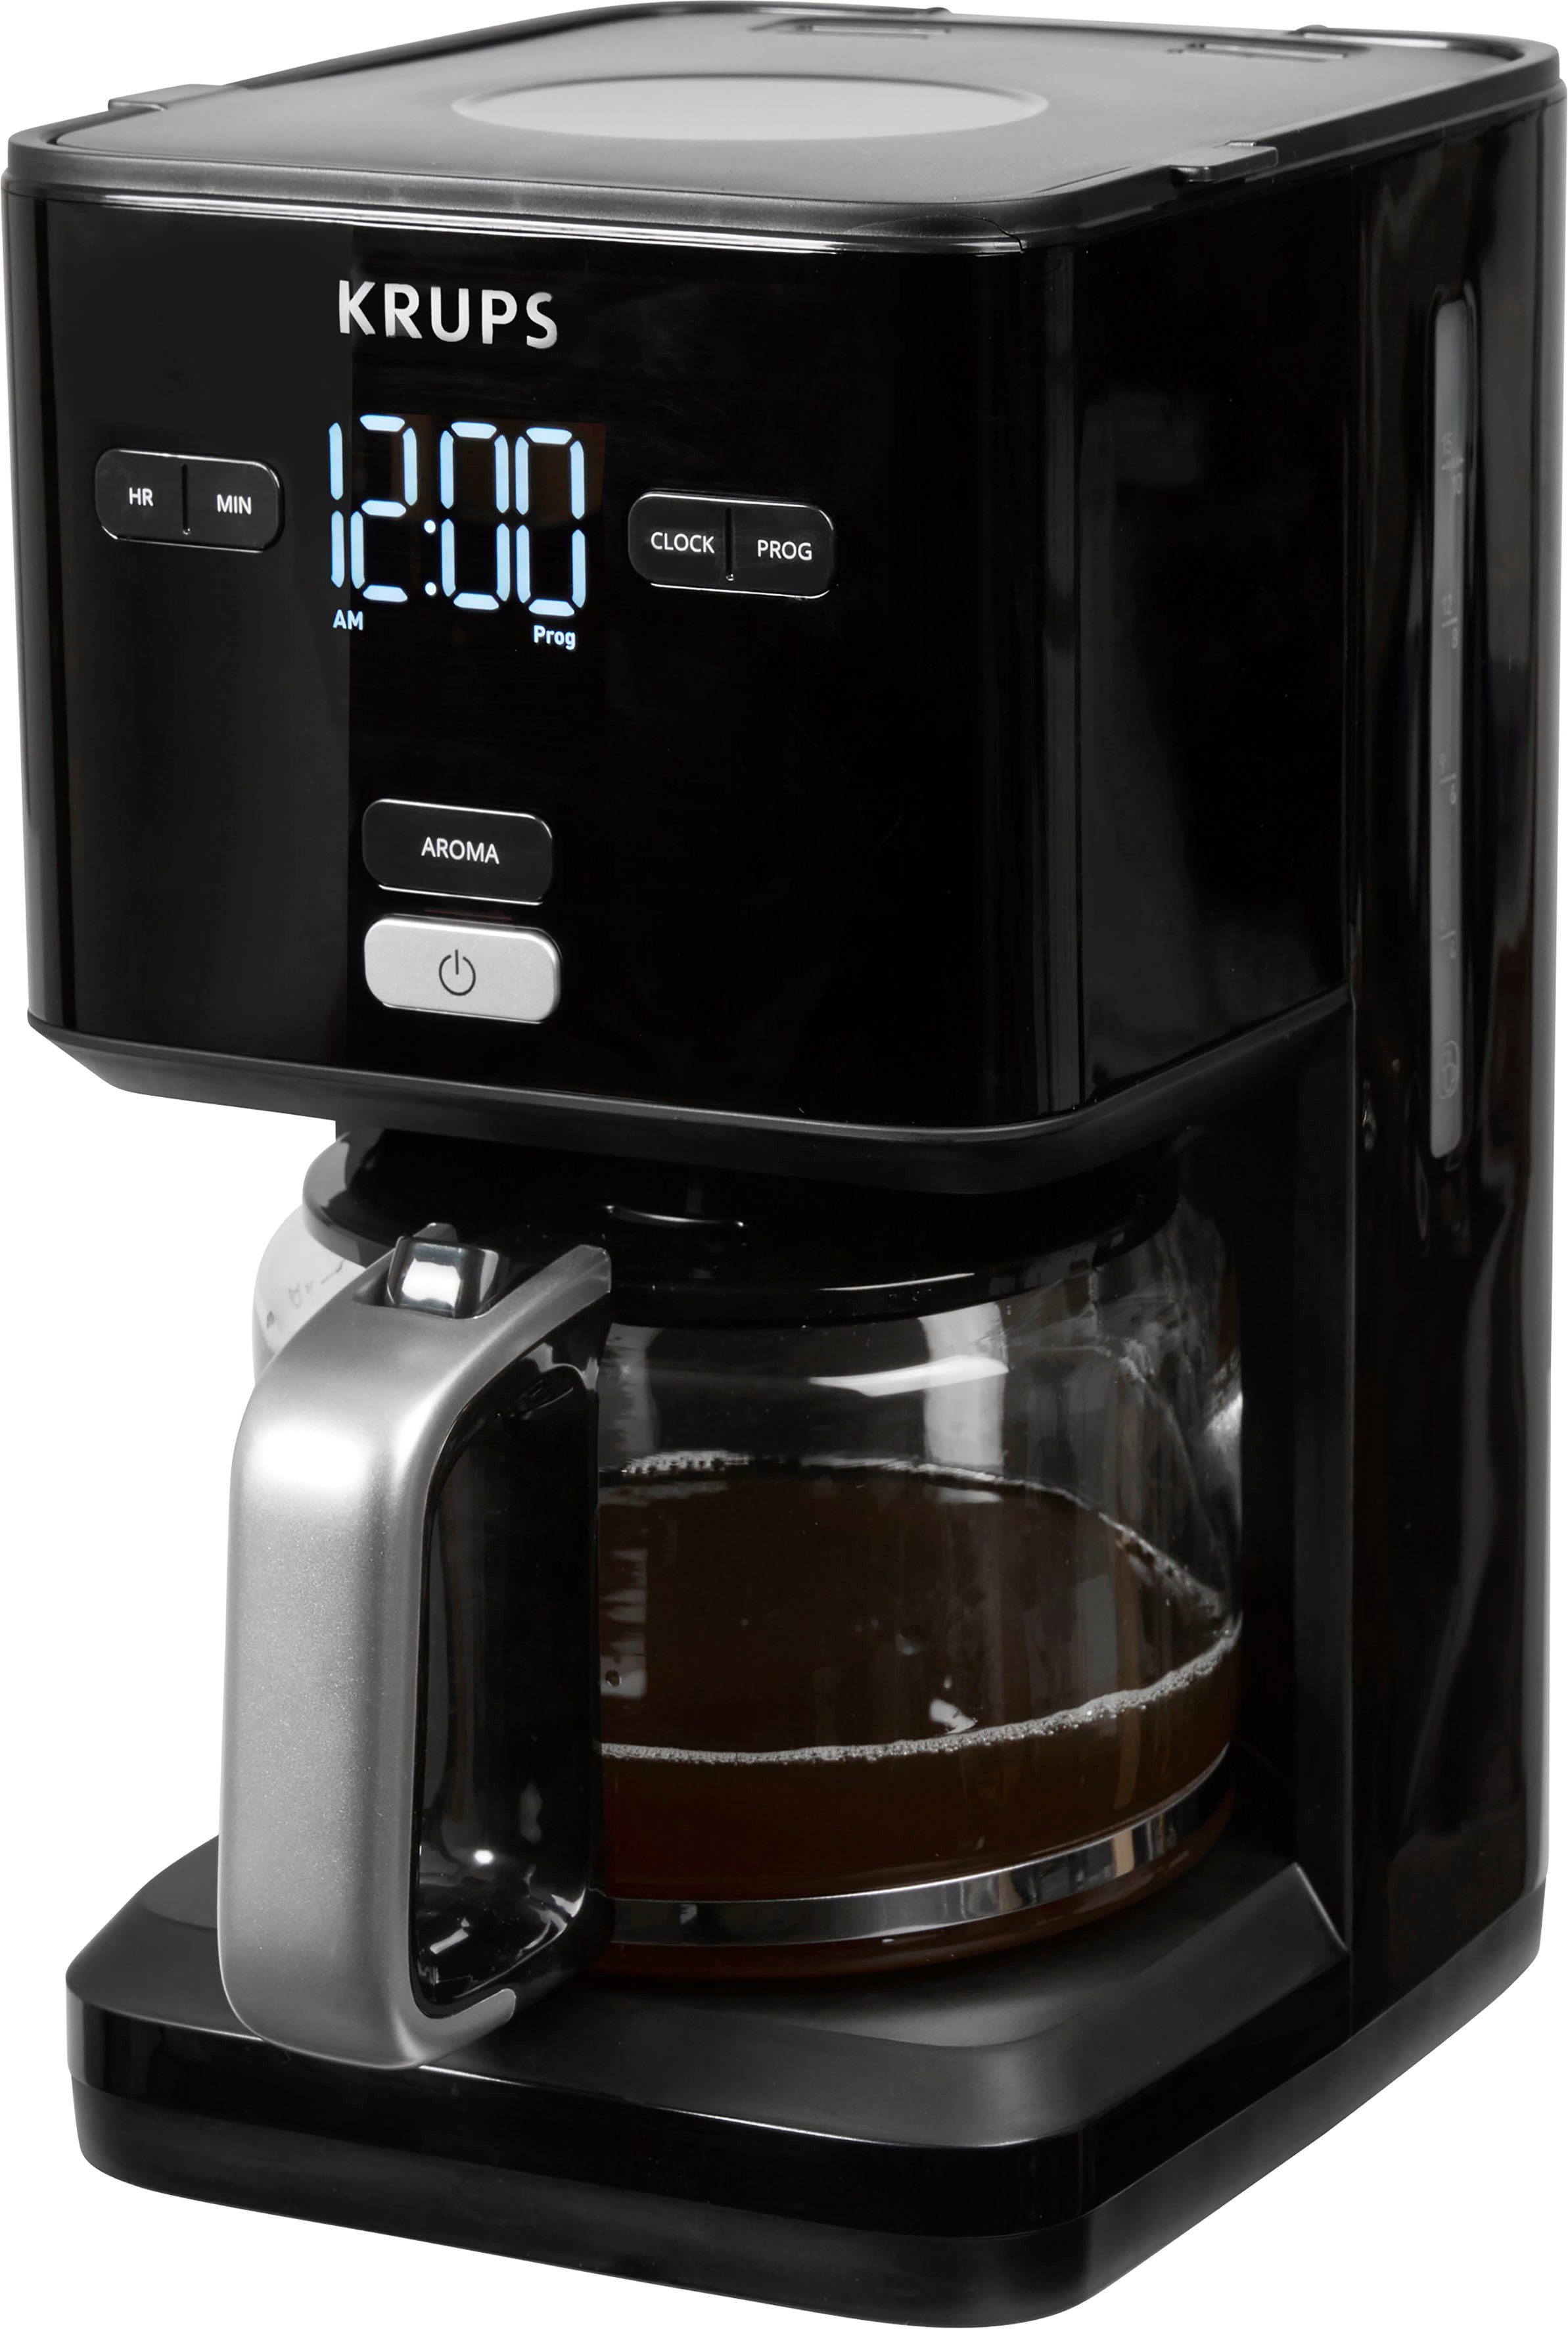 Krups Filterkaffeemaschine 24-Std-Timer, nach Abschaltung KM6008 1,25l Minuten 30 Smart'n automatische Light, Kaffeekanne